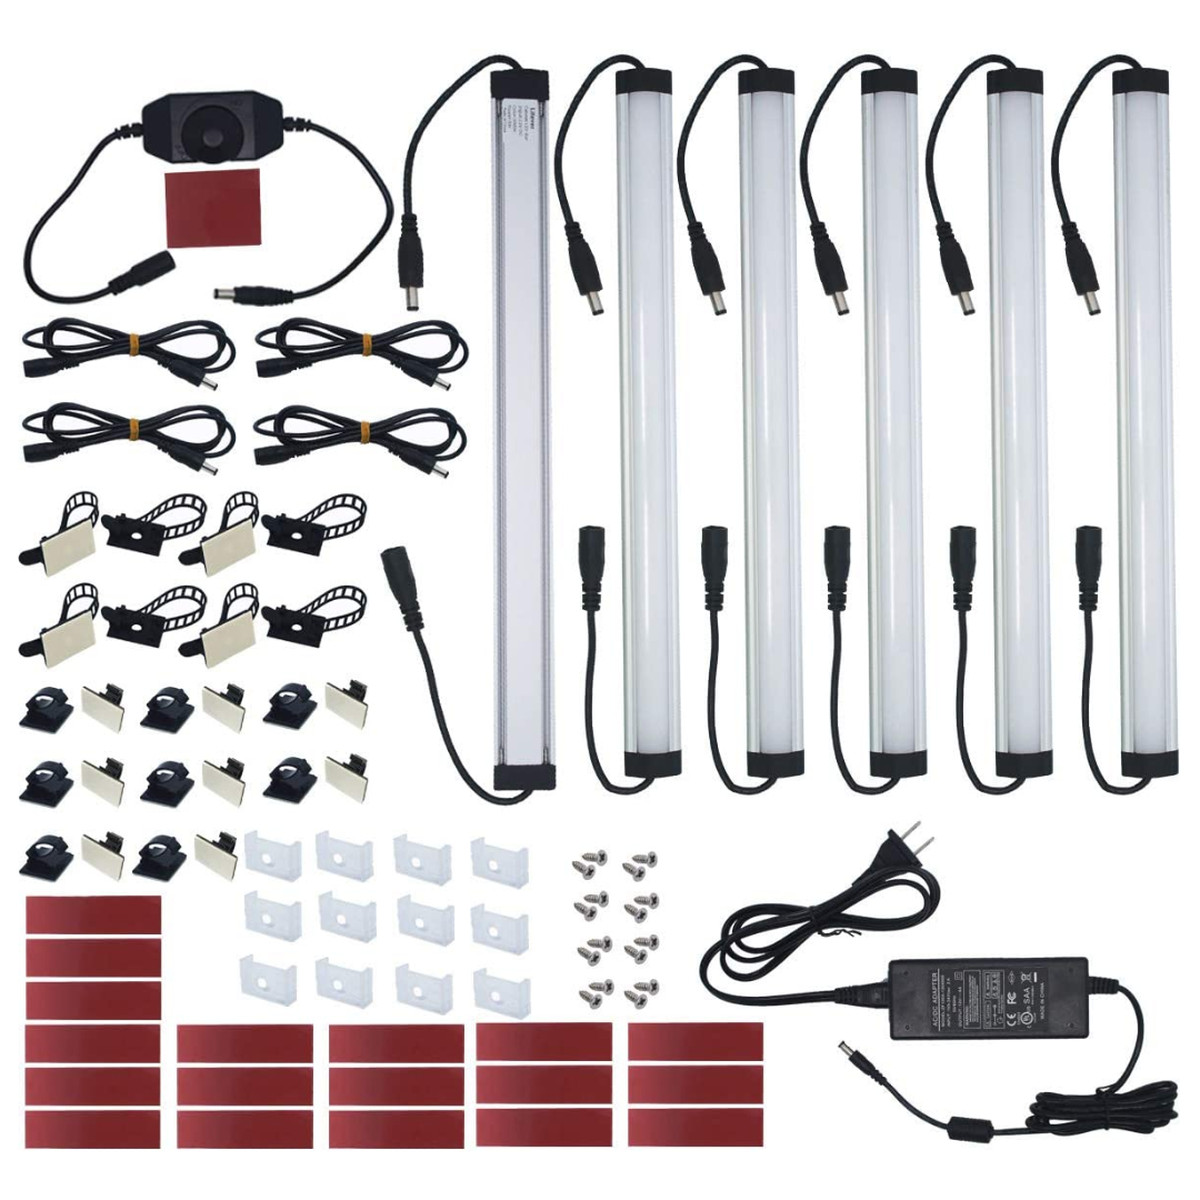 Litever Under-Cabinet Lighting Kit